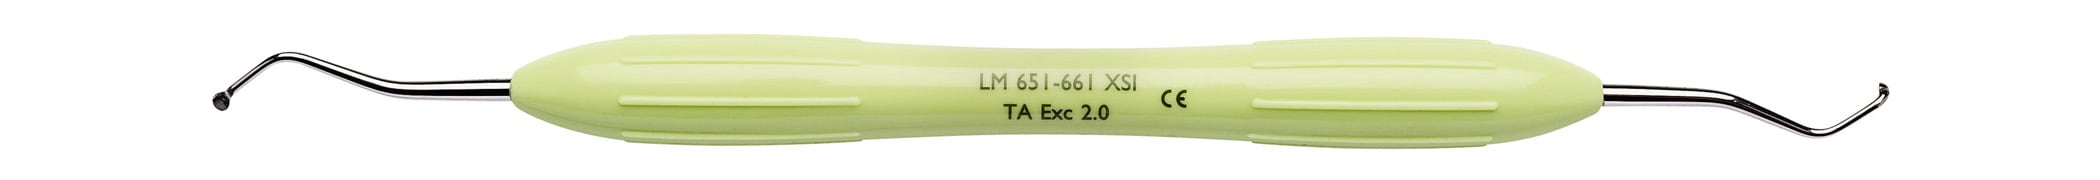 LM Excavator 2,0mm 651-661 XSI